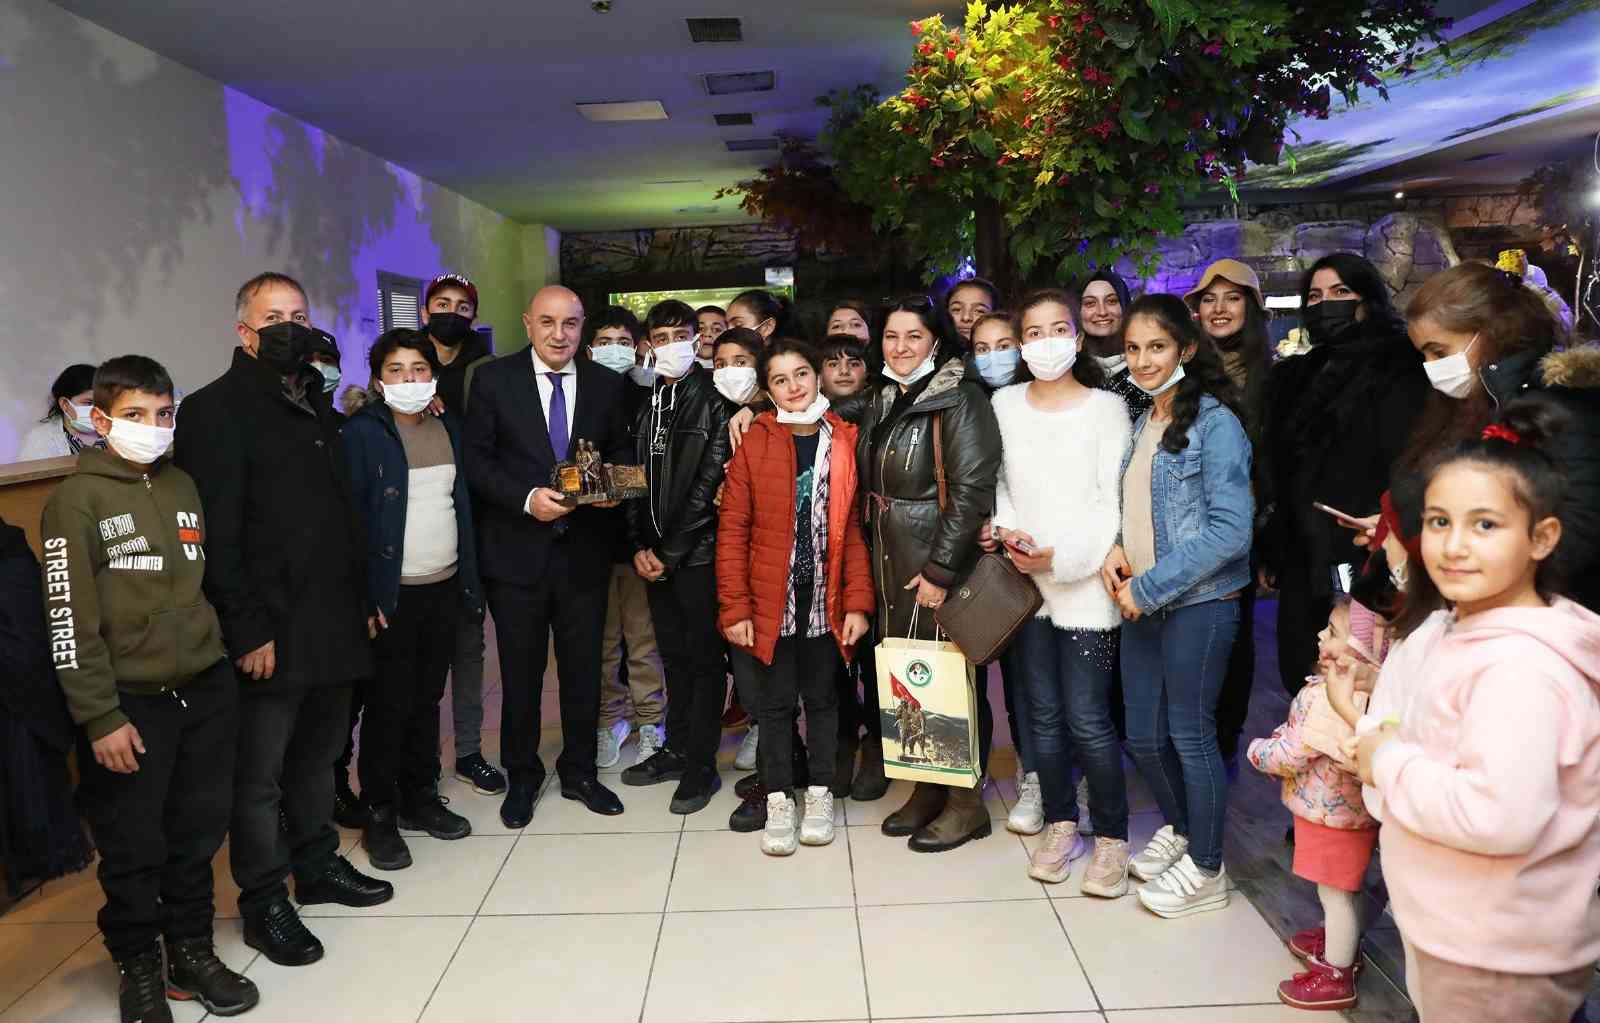 Sarıkamış’tan gelen öğrencileri Keçiören Belediyesi misafir etti #ankara